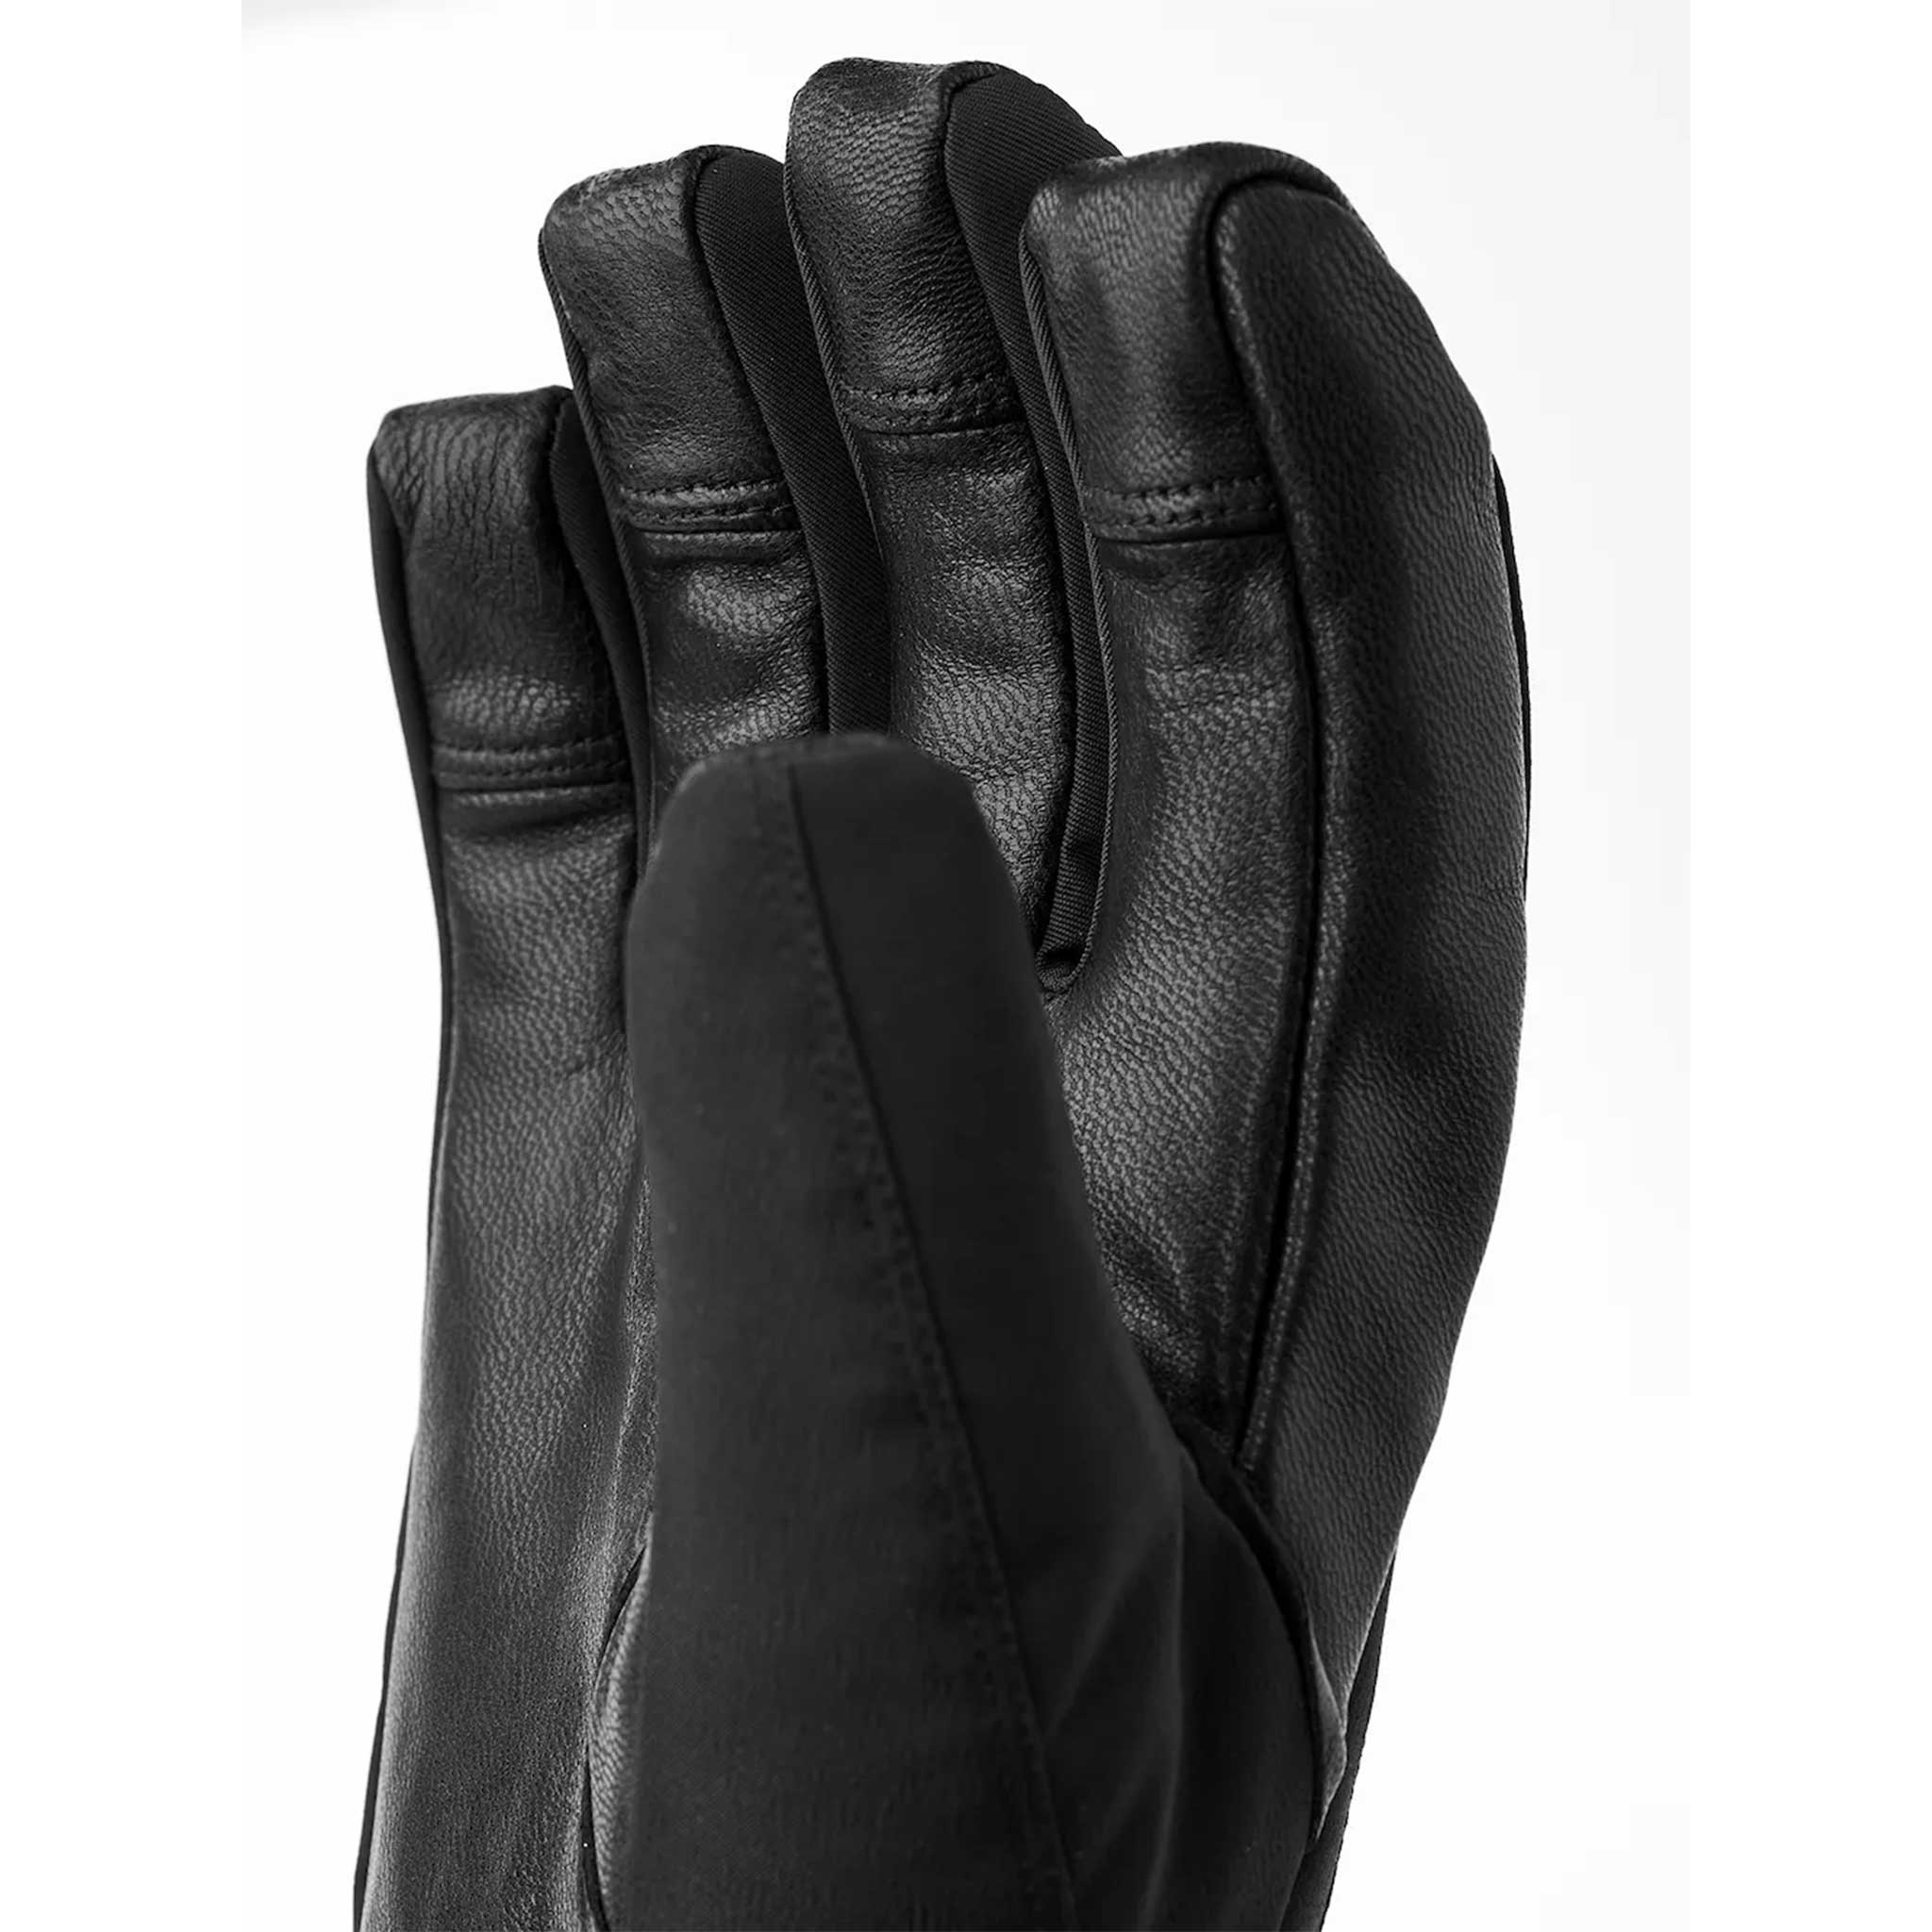 CZone Pointer Gloves in Black